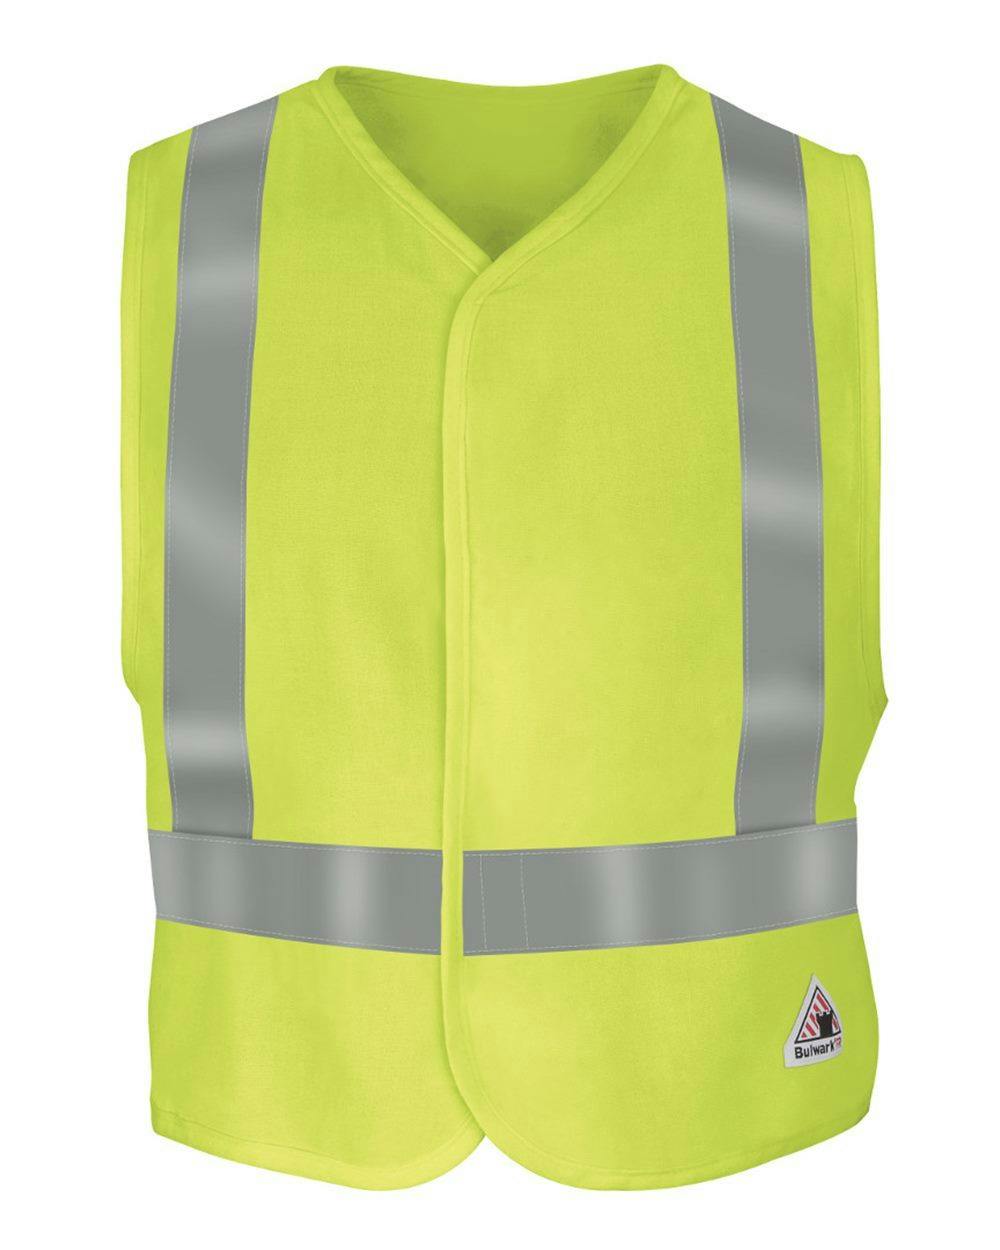 Image for Hi-Visibility Flame-Resistant Safety Vest - VMV4HV